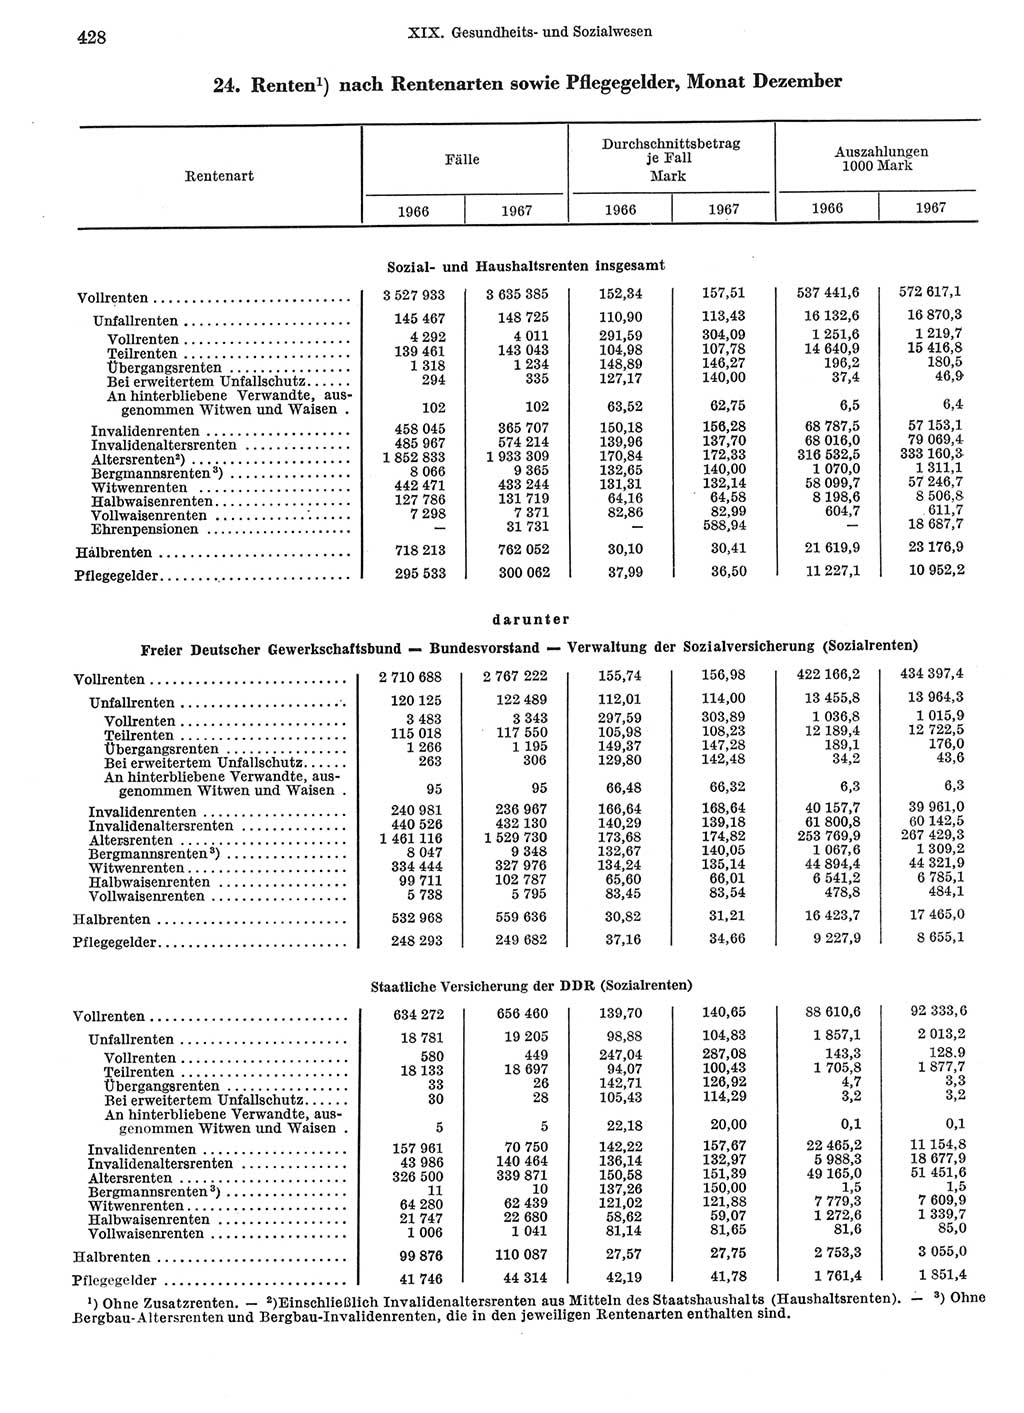 Statistisches Jahrbuch der Deutschen Demokratischen Republik (DDR) 1969, Seite 428 (Stat. Jb. DDR 1969, S. 428)